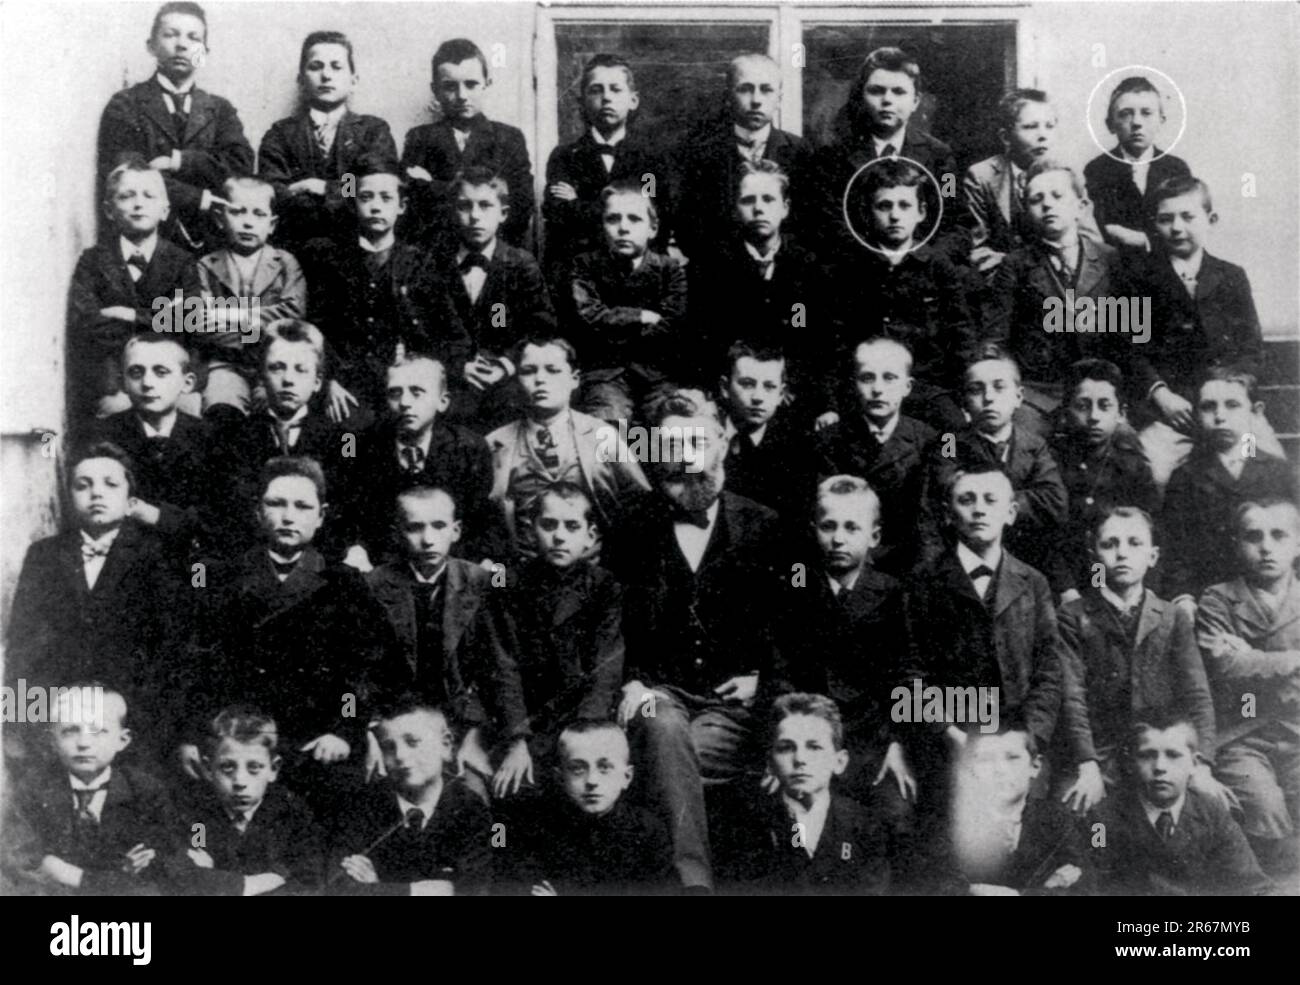 Adolf Hitler da bambino. Foto di classe alla Realschule nel 1901, il giovane Adolf Hitler nell'ultima fila a destra. Nella penultima fila, terzo dalla destra, uno studente che si crede sia Ludwig Wittgenstein. Foto Stock